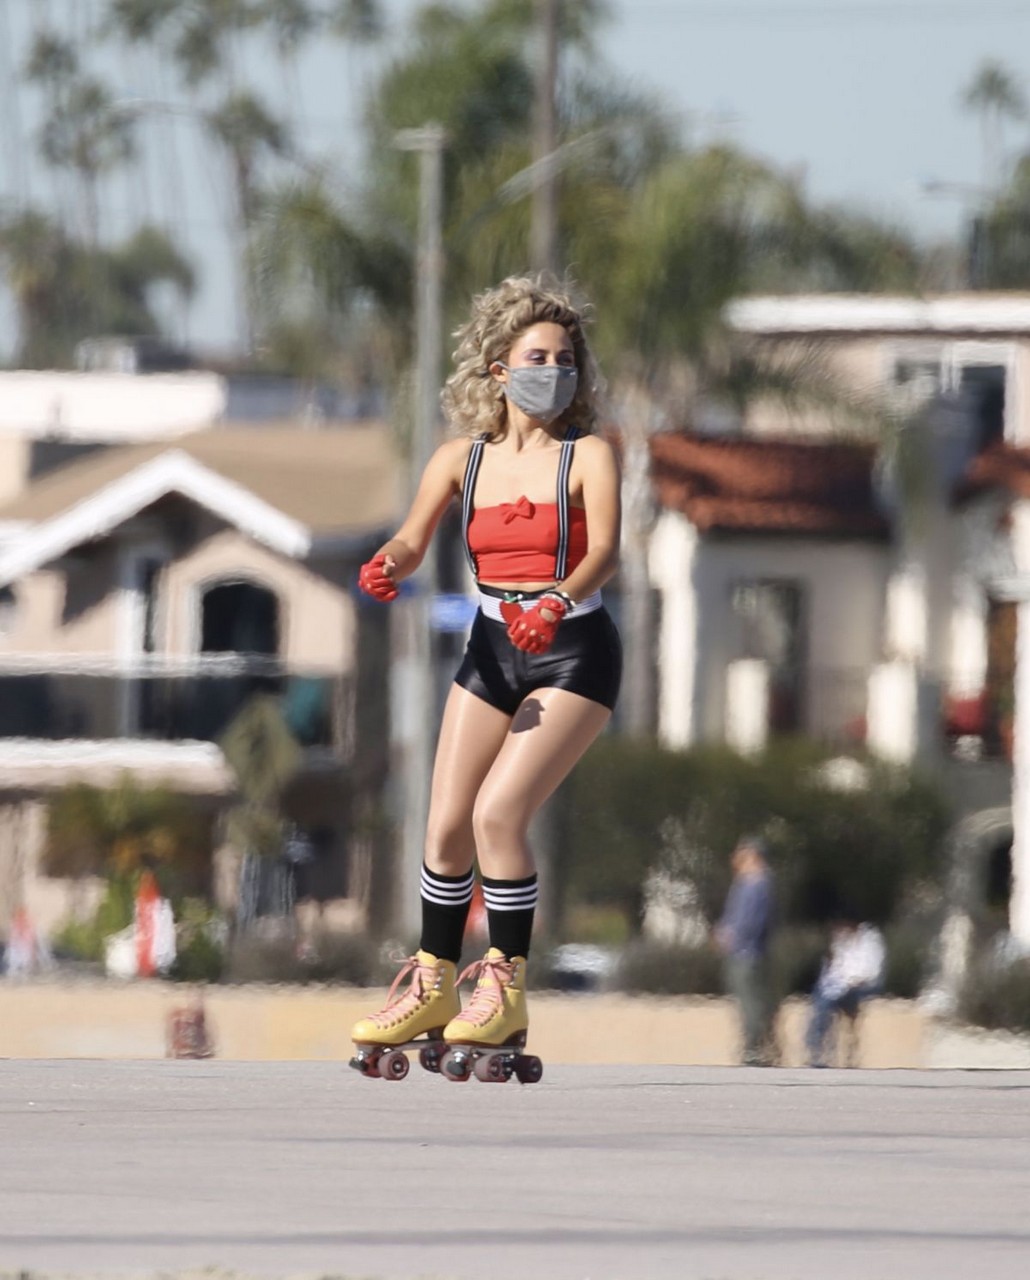 Della Saba Out Roller Skating Los Angeles